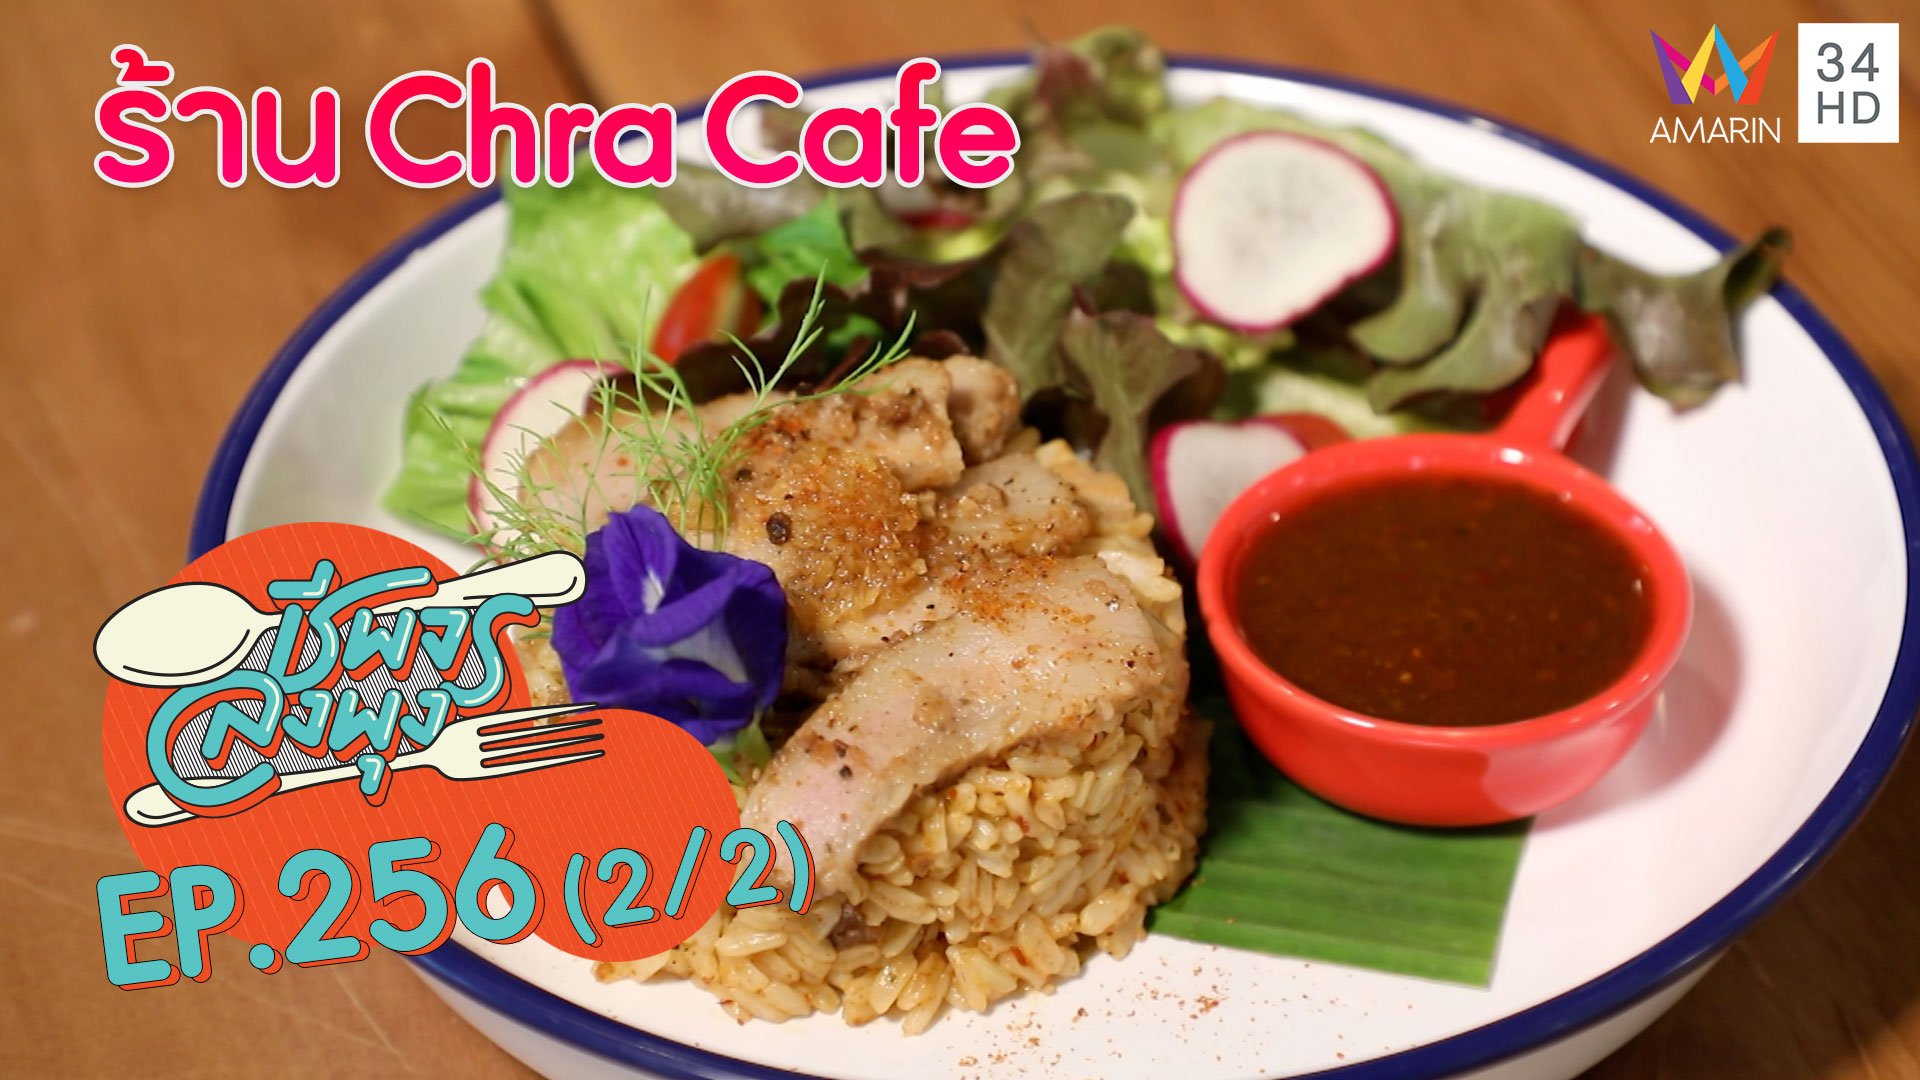 ข้าวผัดคอหมูย่างน้ำจิ้มแจ่วสูตรเด็ด @ร้าน Chra Cafe | ชีพจรลงพุง | 21 พ.ย. 63 (2/2) | AMARIN TVHD34